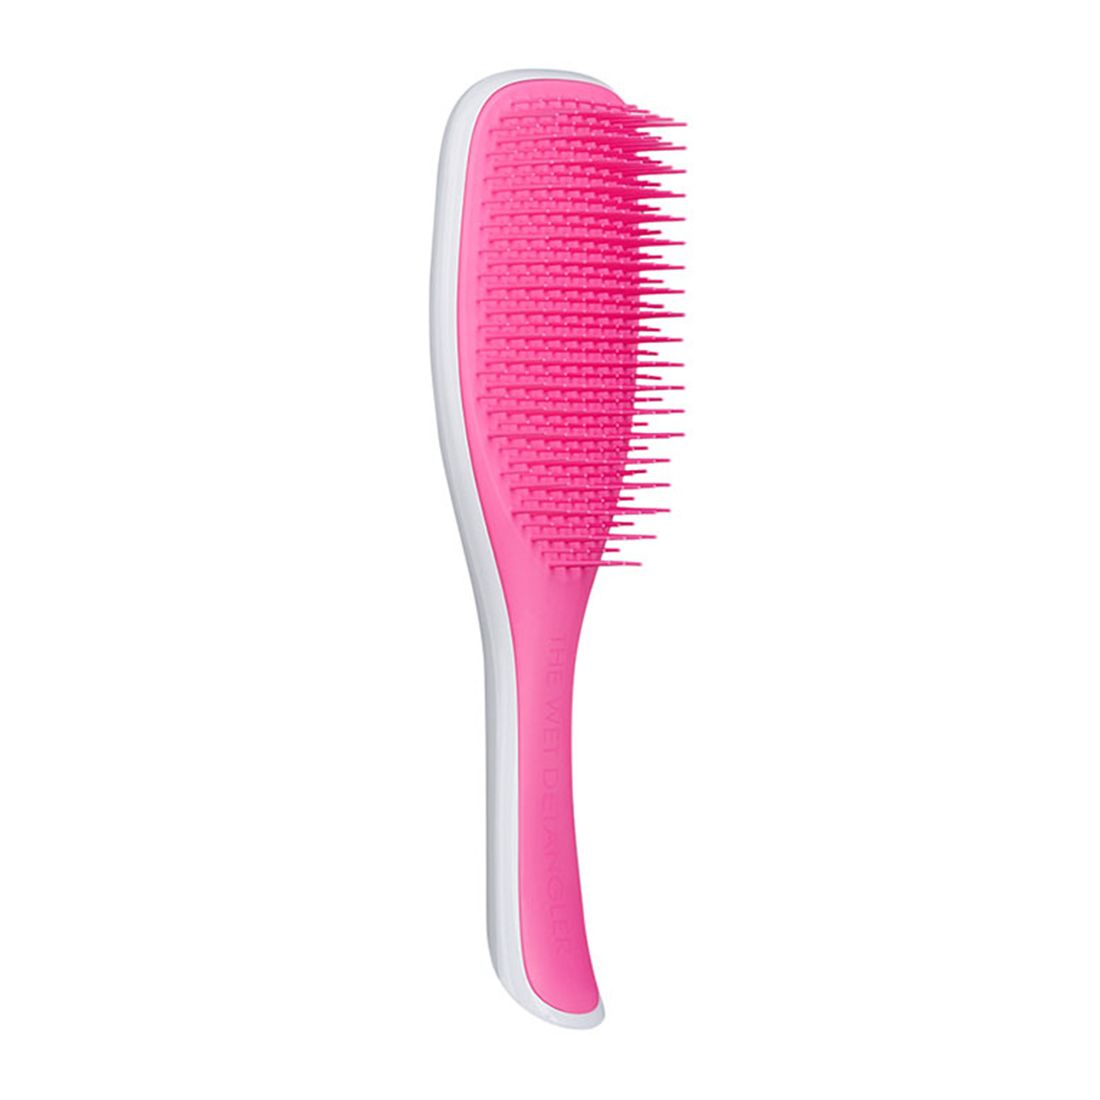 Tangle Teezer Wet Detangler Hair Brush - Pink